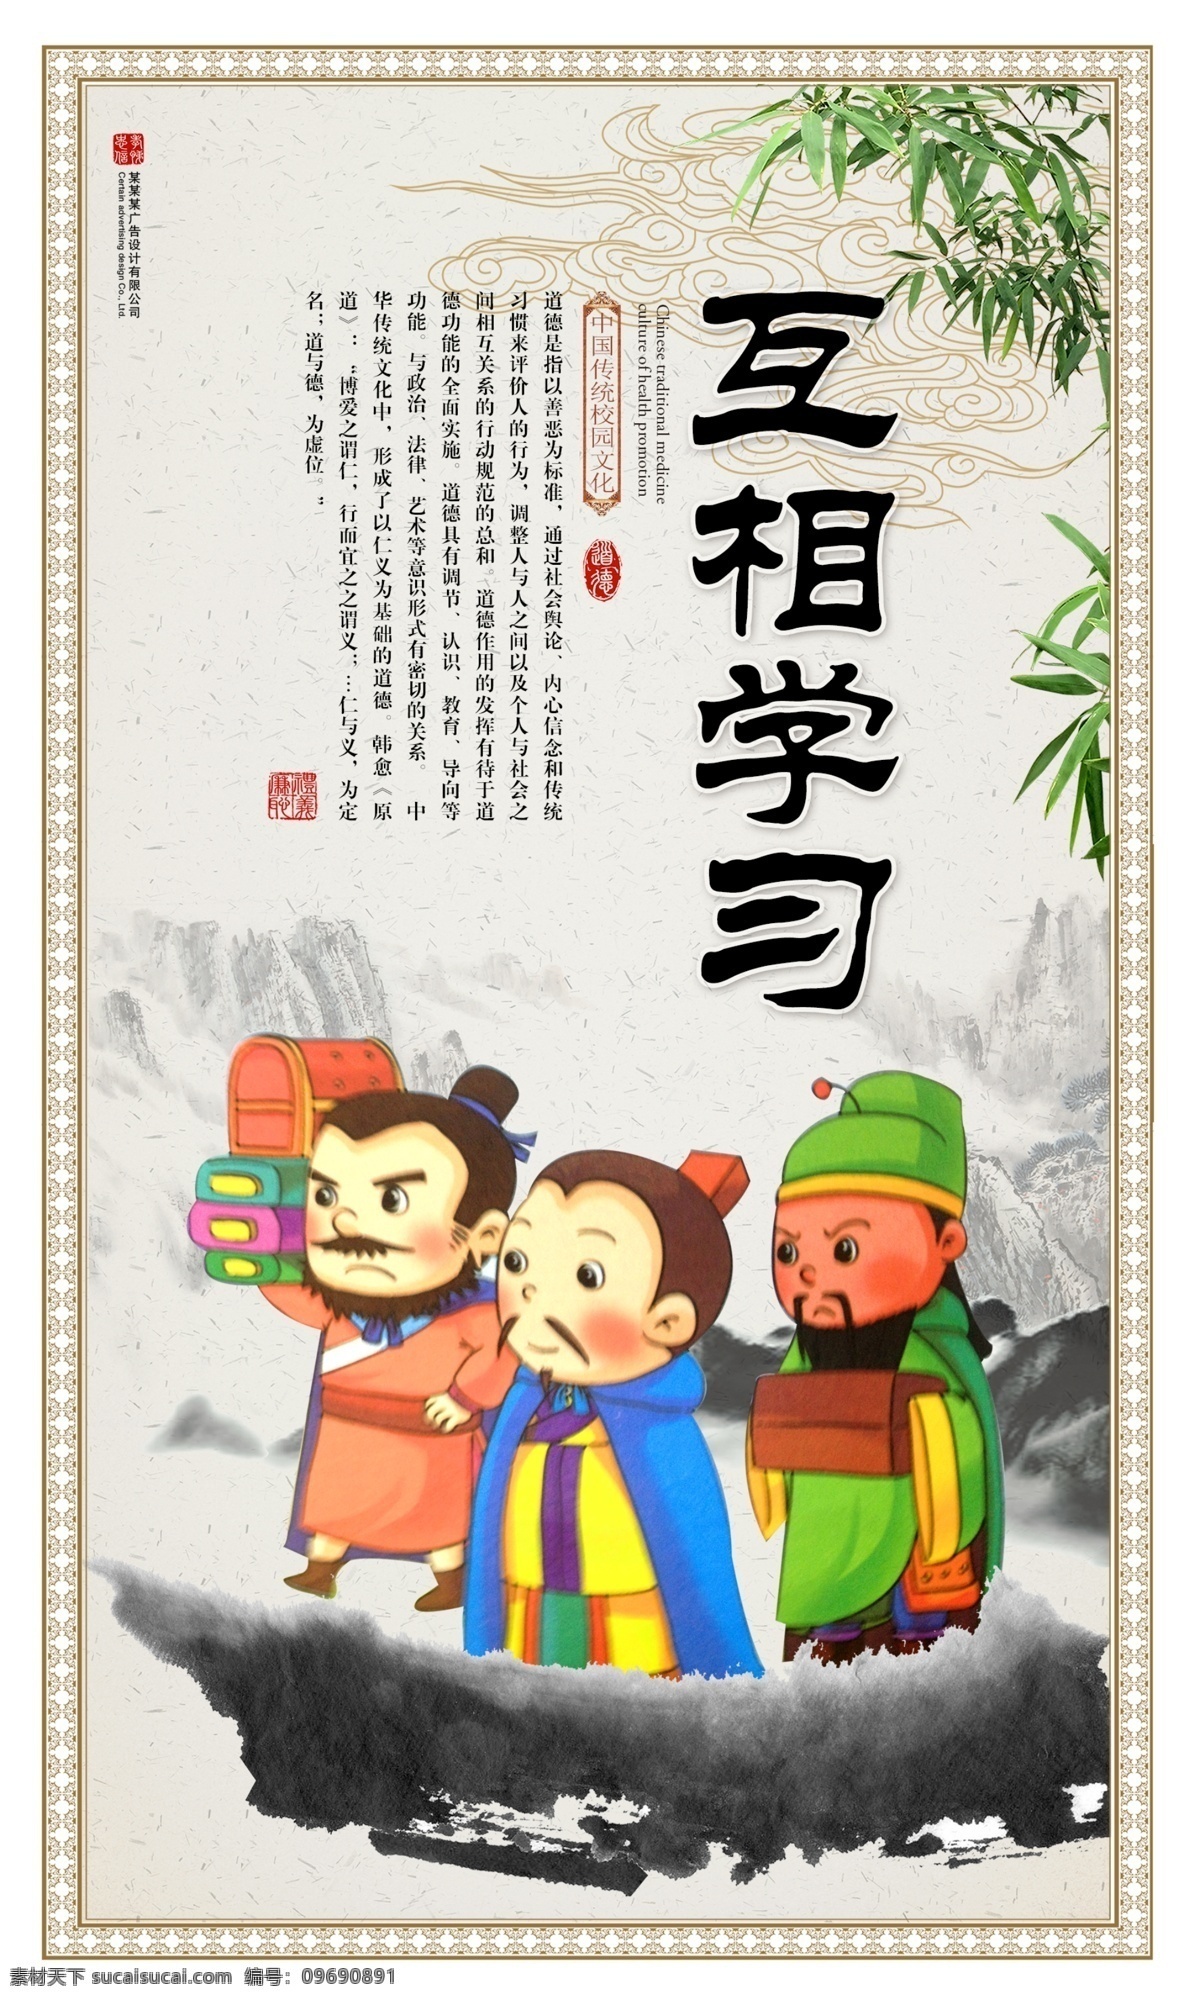 互相学习 漫画 中国风 传统文化 道德建设 校园 班级文化 校园文化 挂画 中国传统 优秀传统